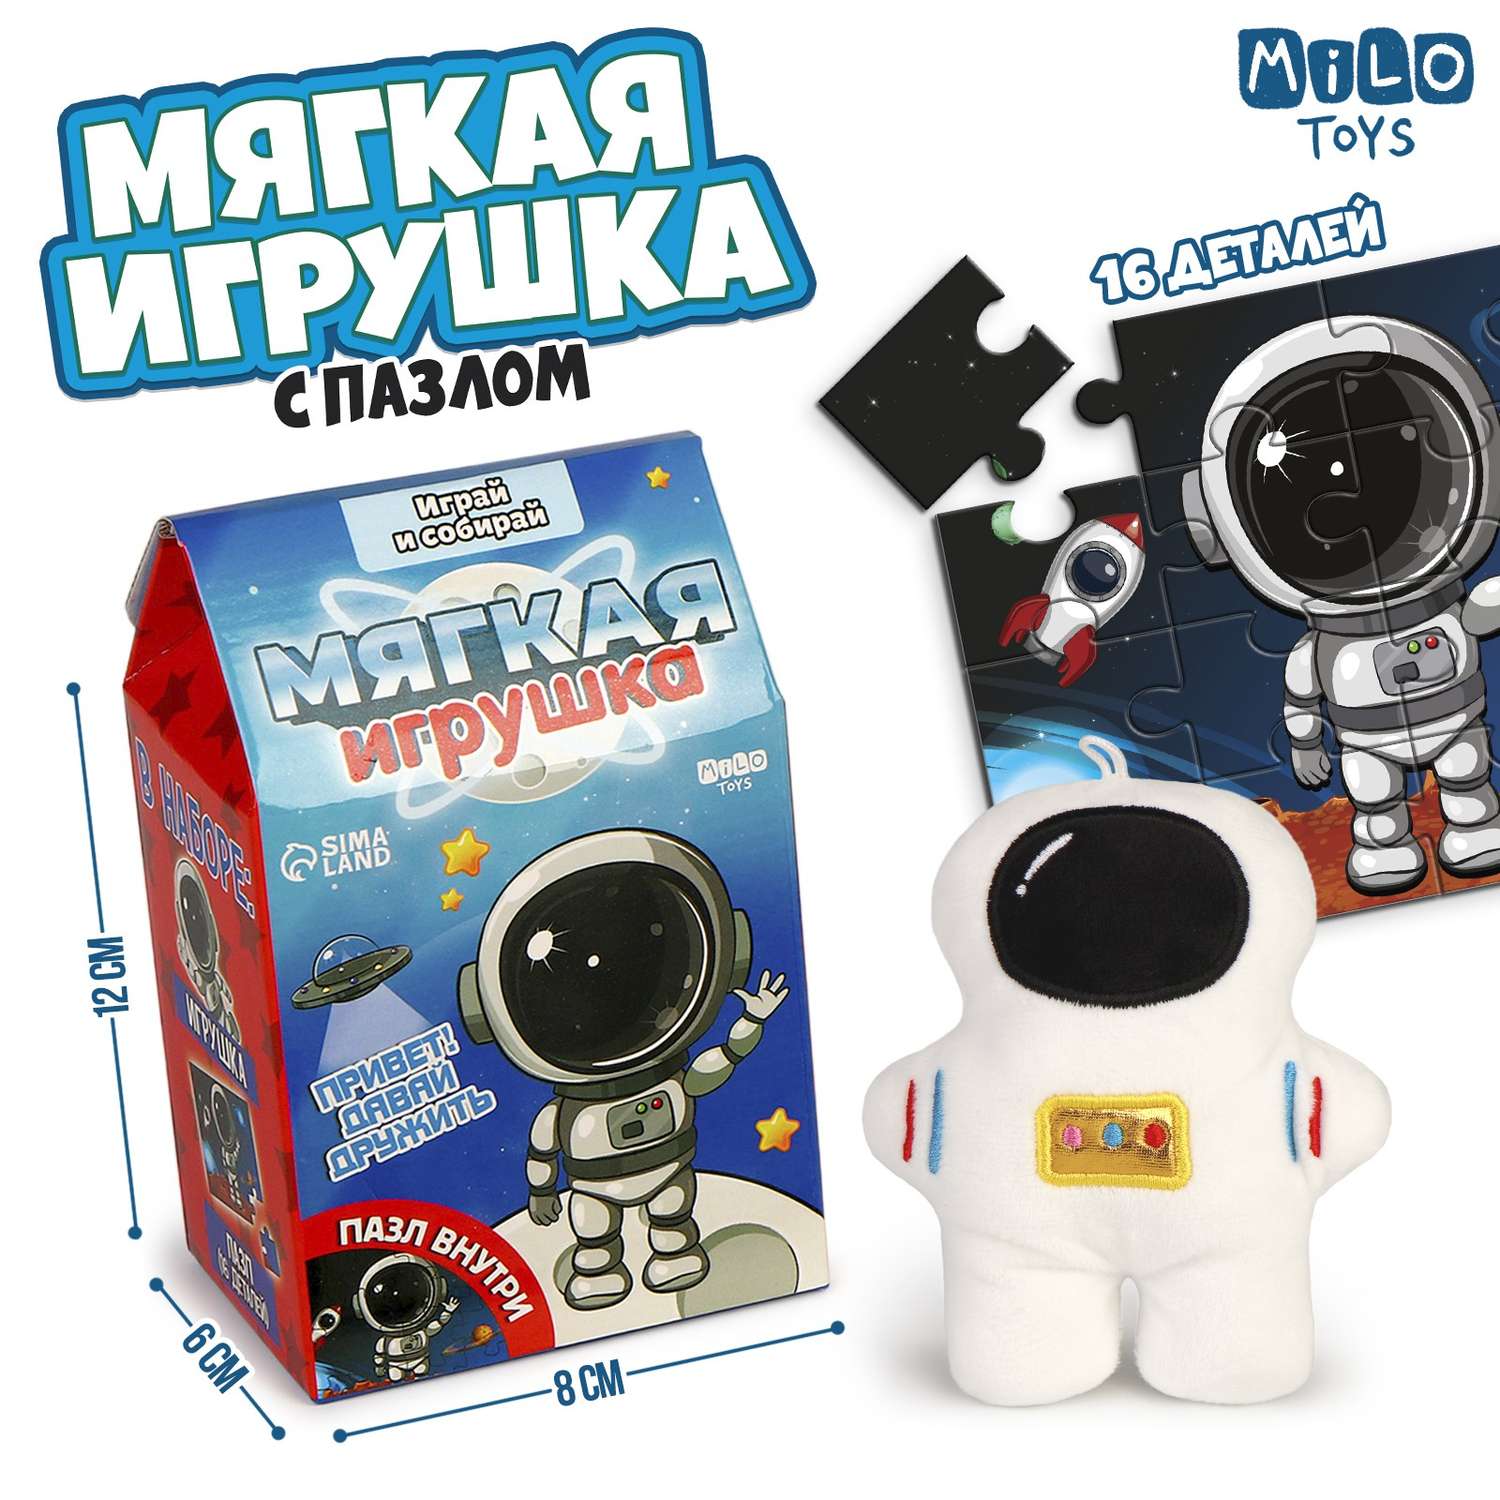 Набор Milo Toys мягкая игрушка с пазлами «Космонавт» - фото 1